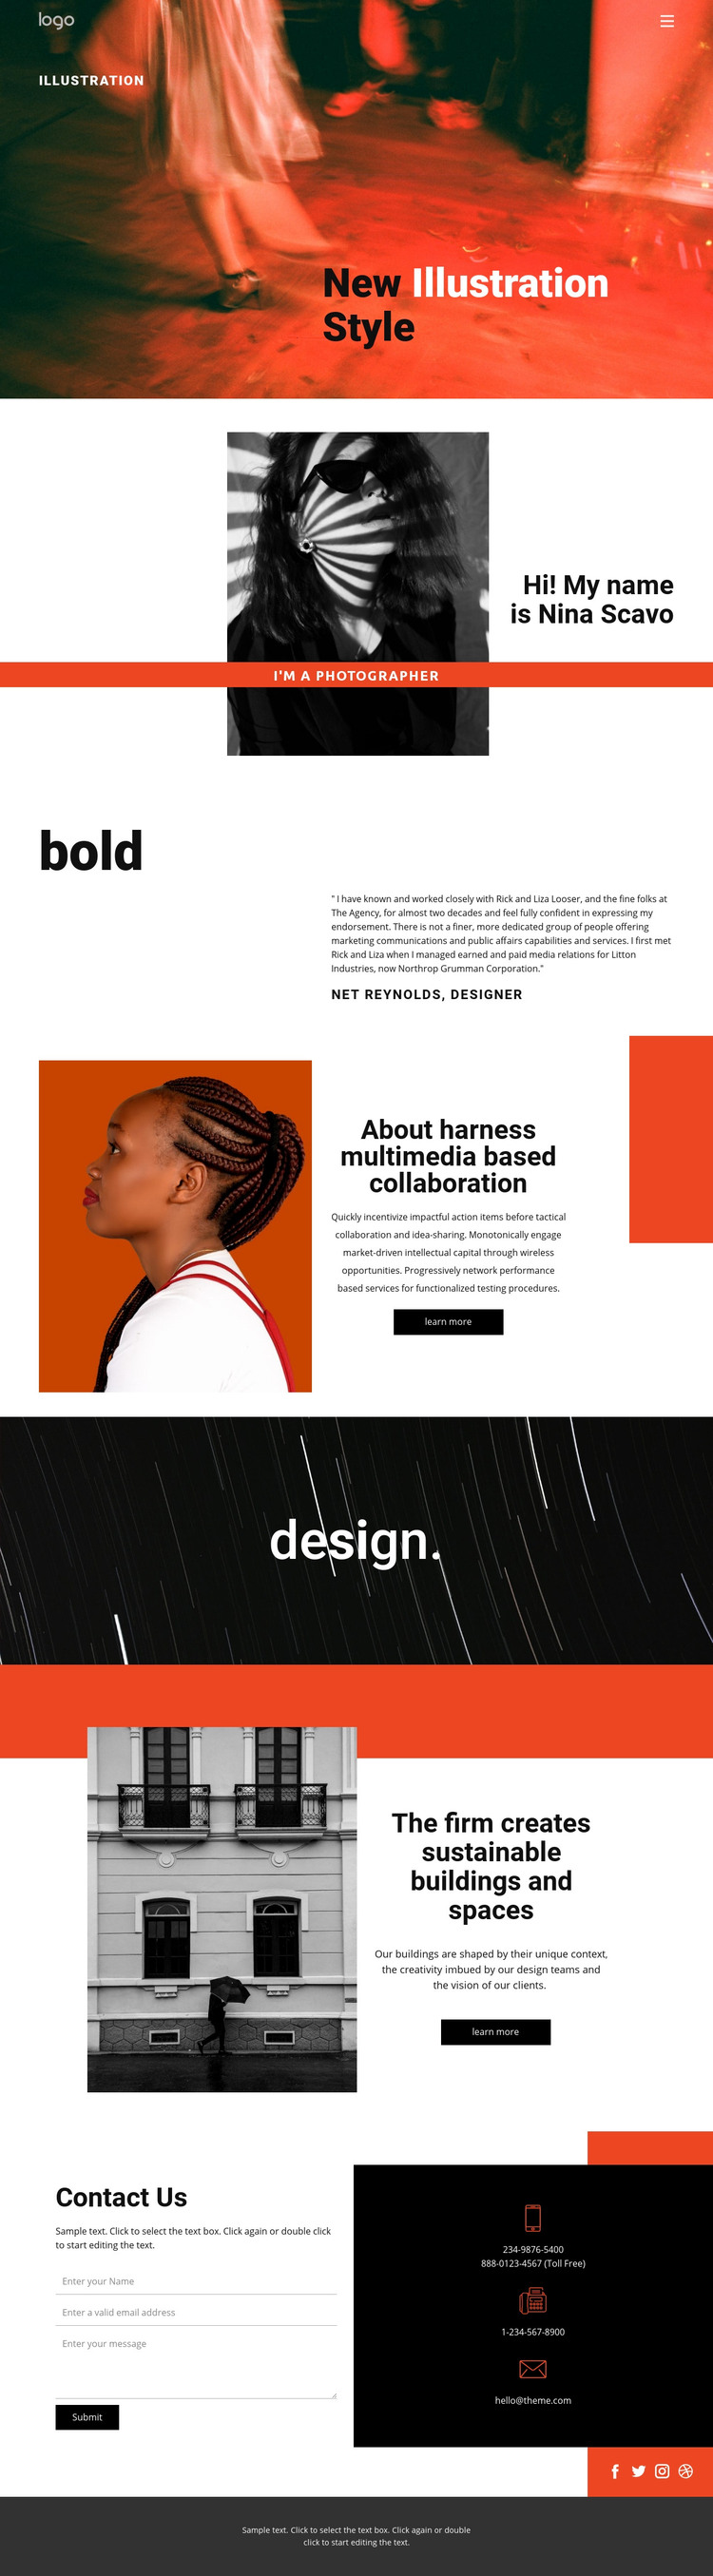 Illustration styles for art  Homepage Design